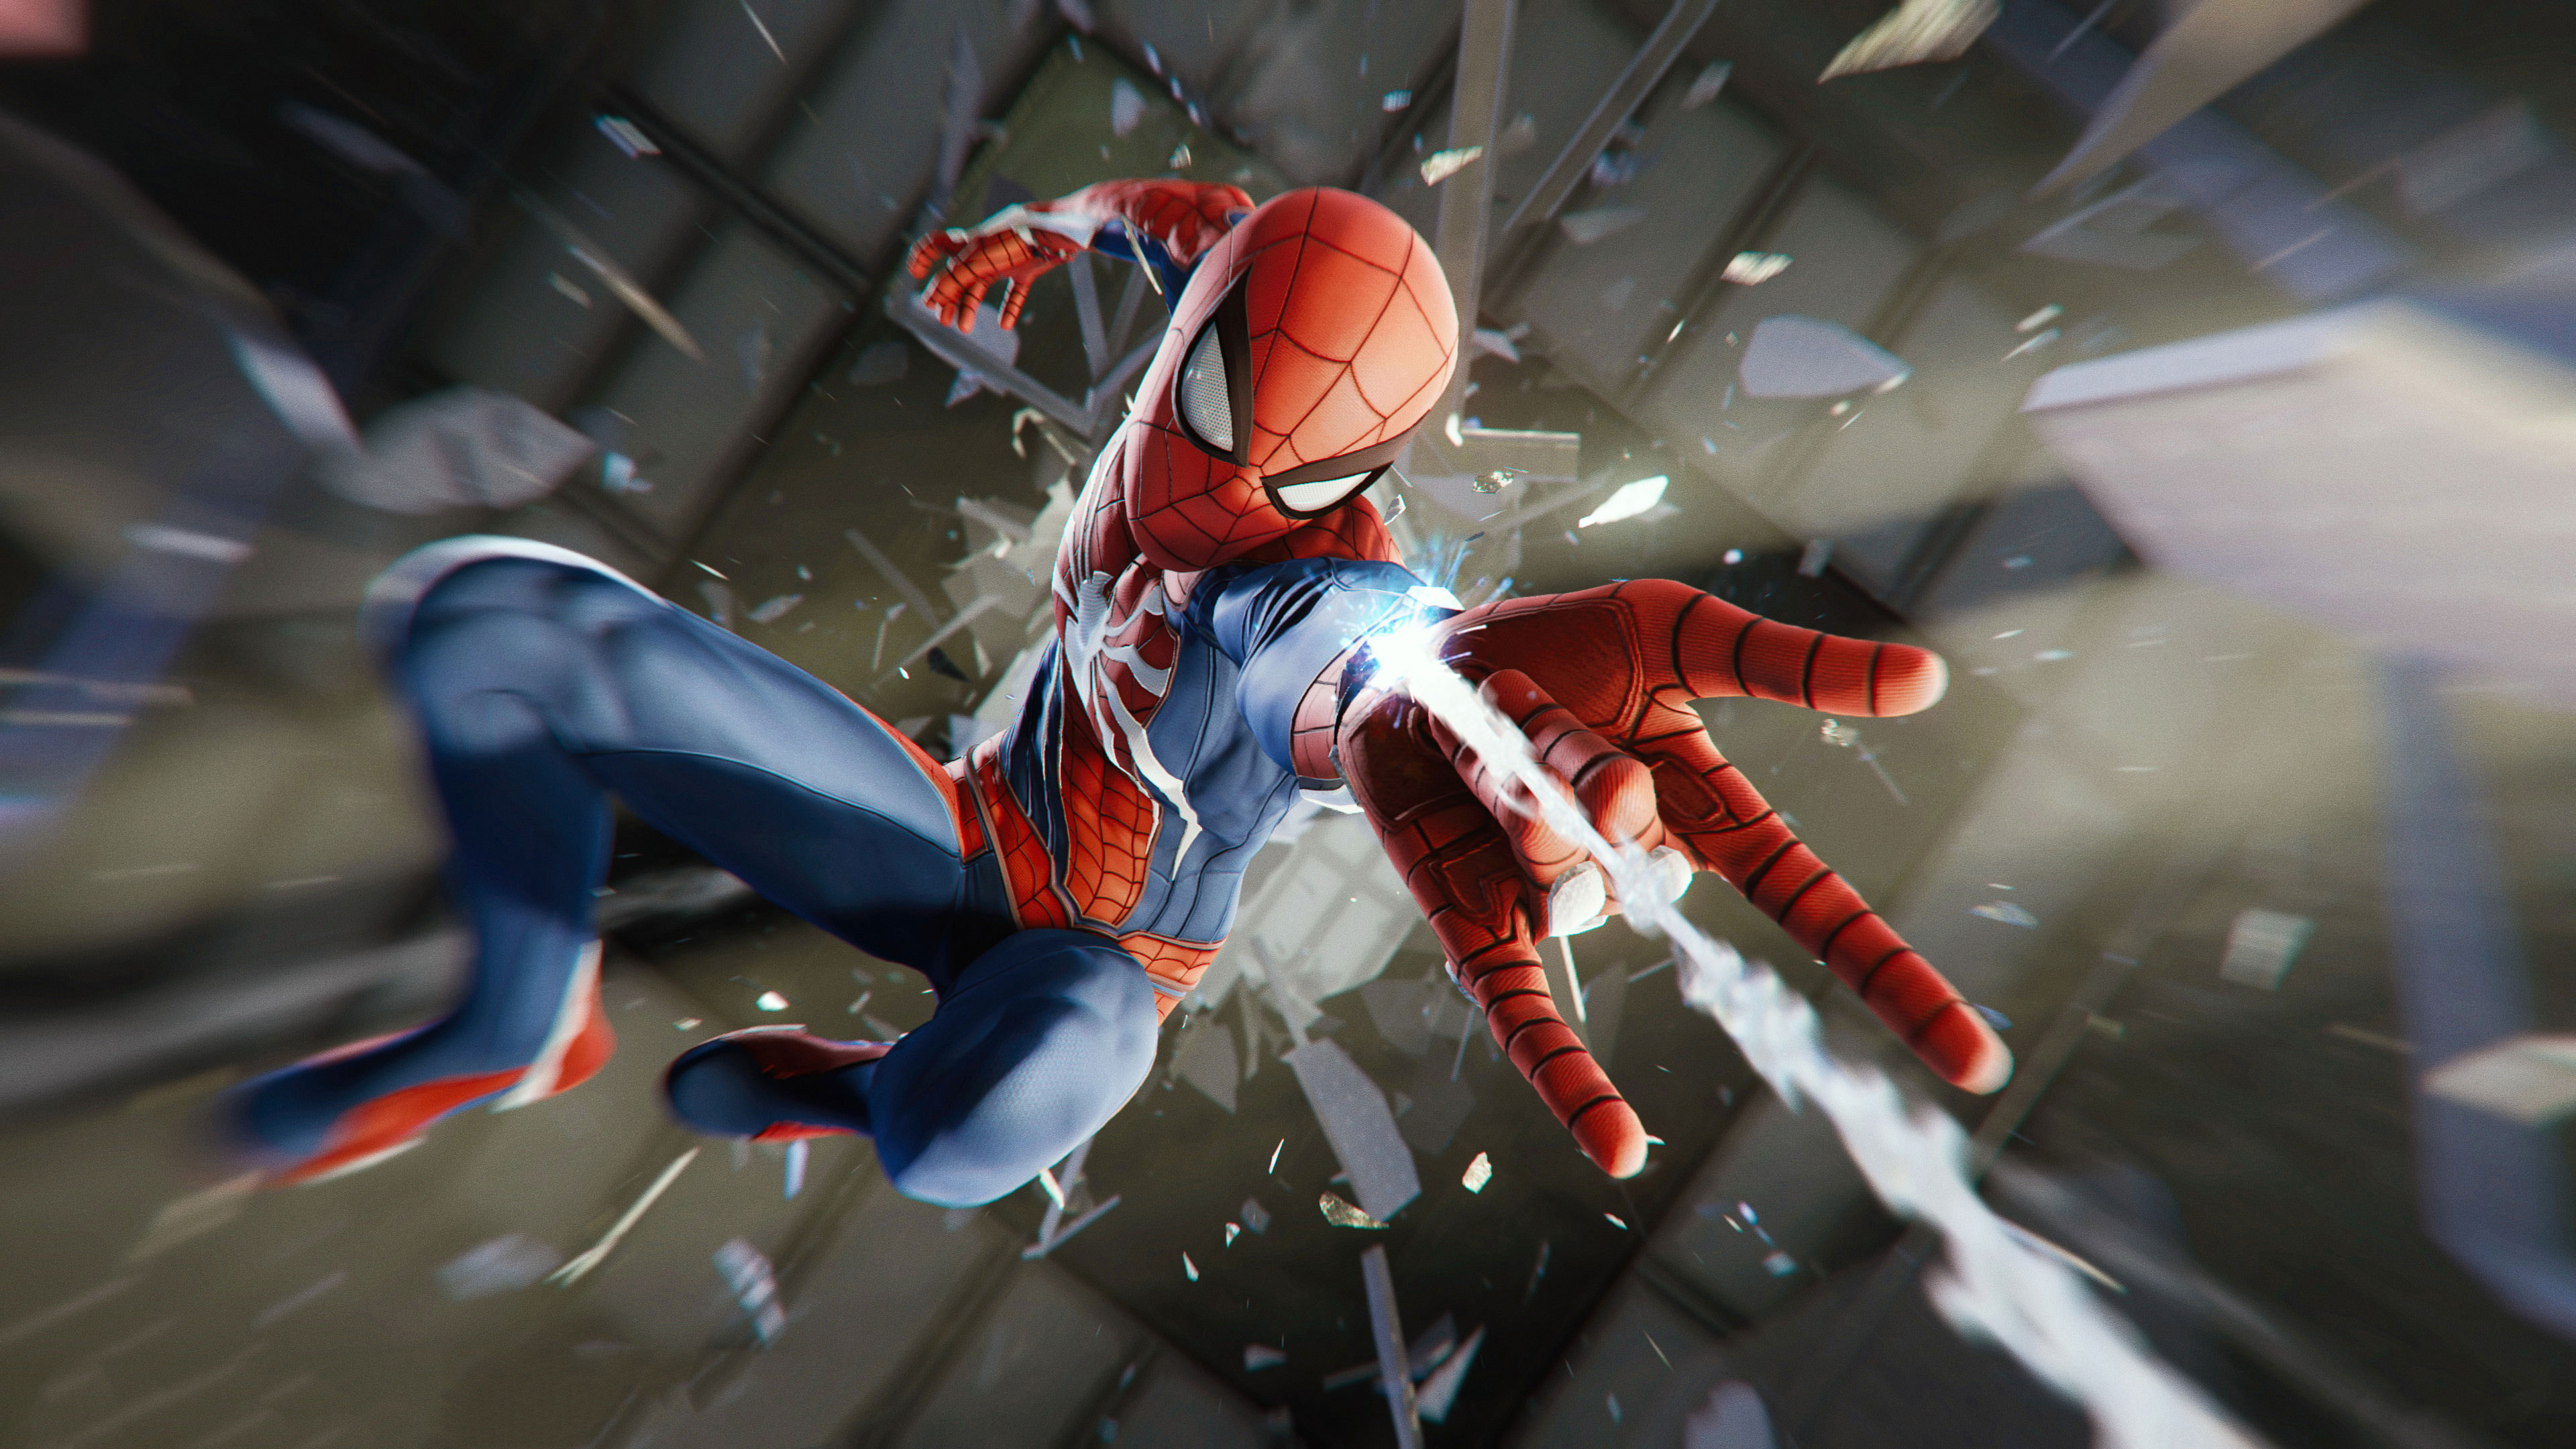 Marvel S Spider Man Wallpaper In Ultra HD 4k Gameranx